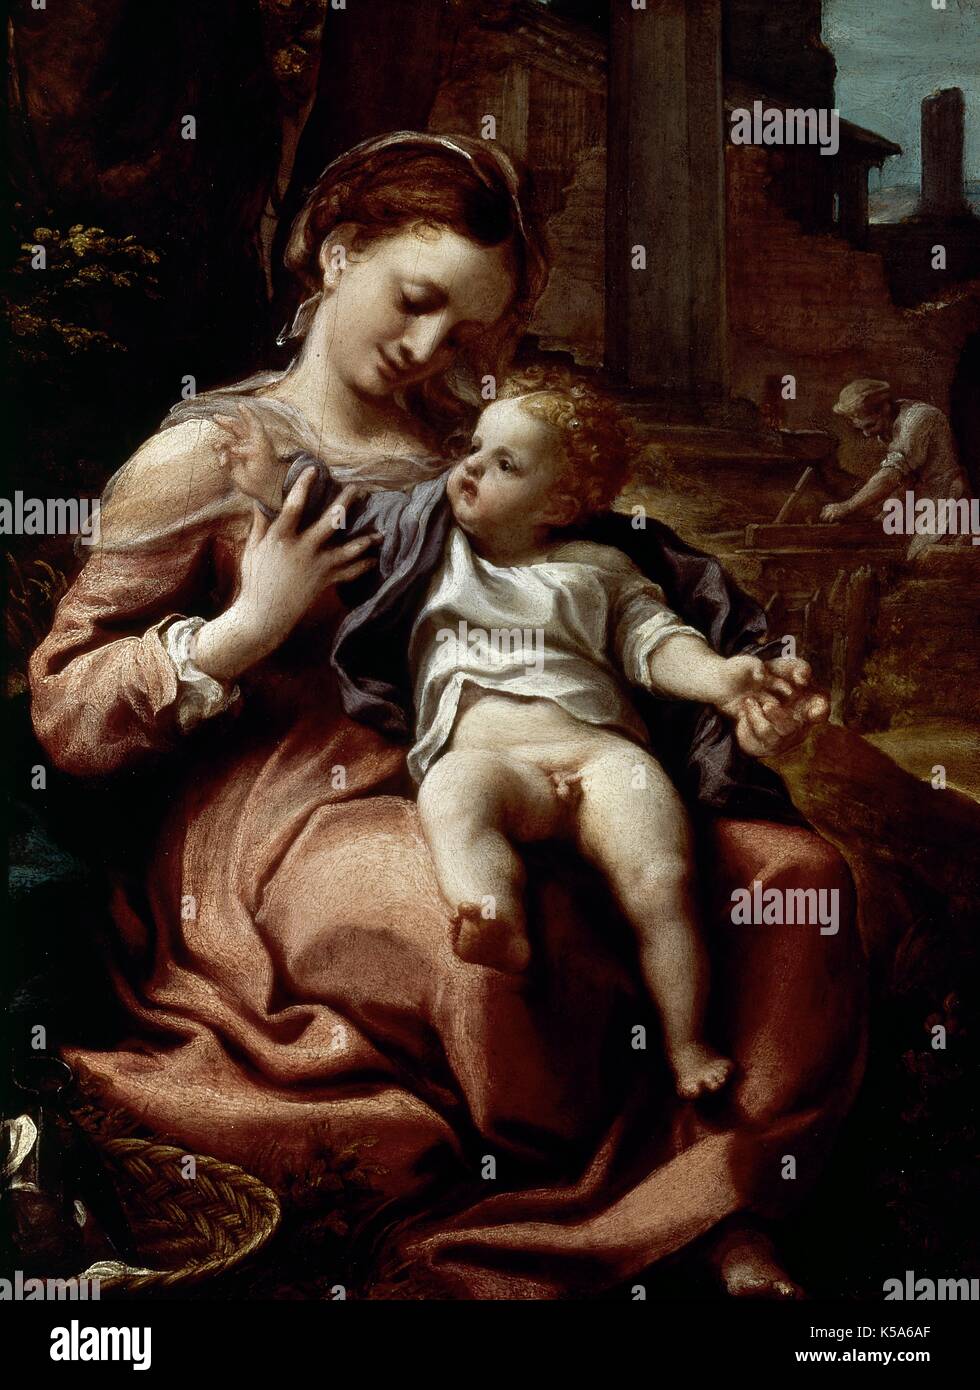 Arte rinascimentale. Antonio Allegri da Correggio (1489-1534). Pittore italiano. Madonna del cesto (circa 1525). National Gallery di Londra, Inghilterra. Foto Stock